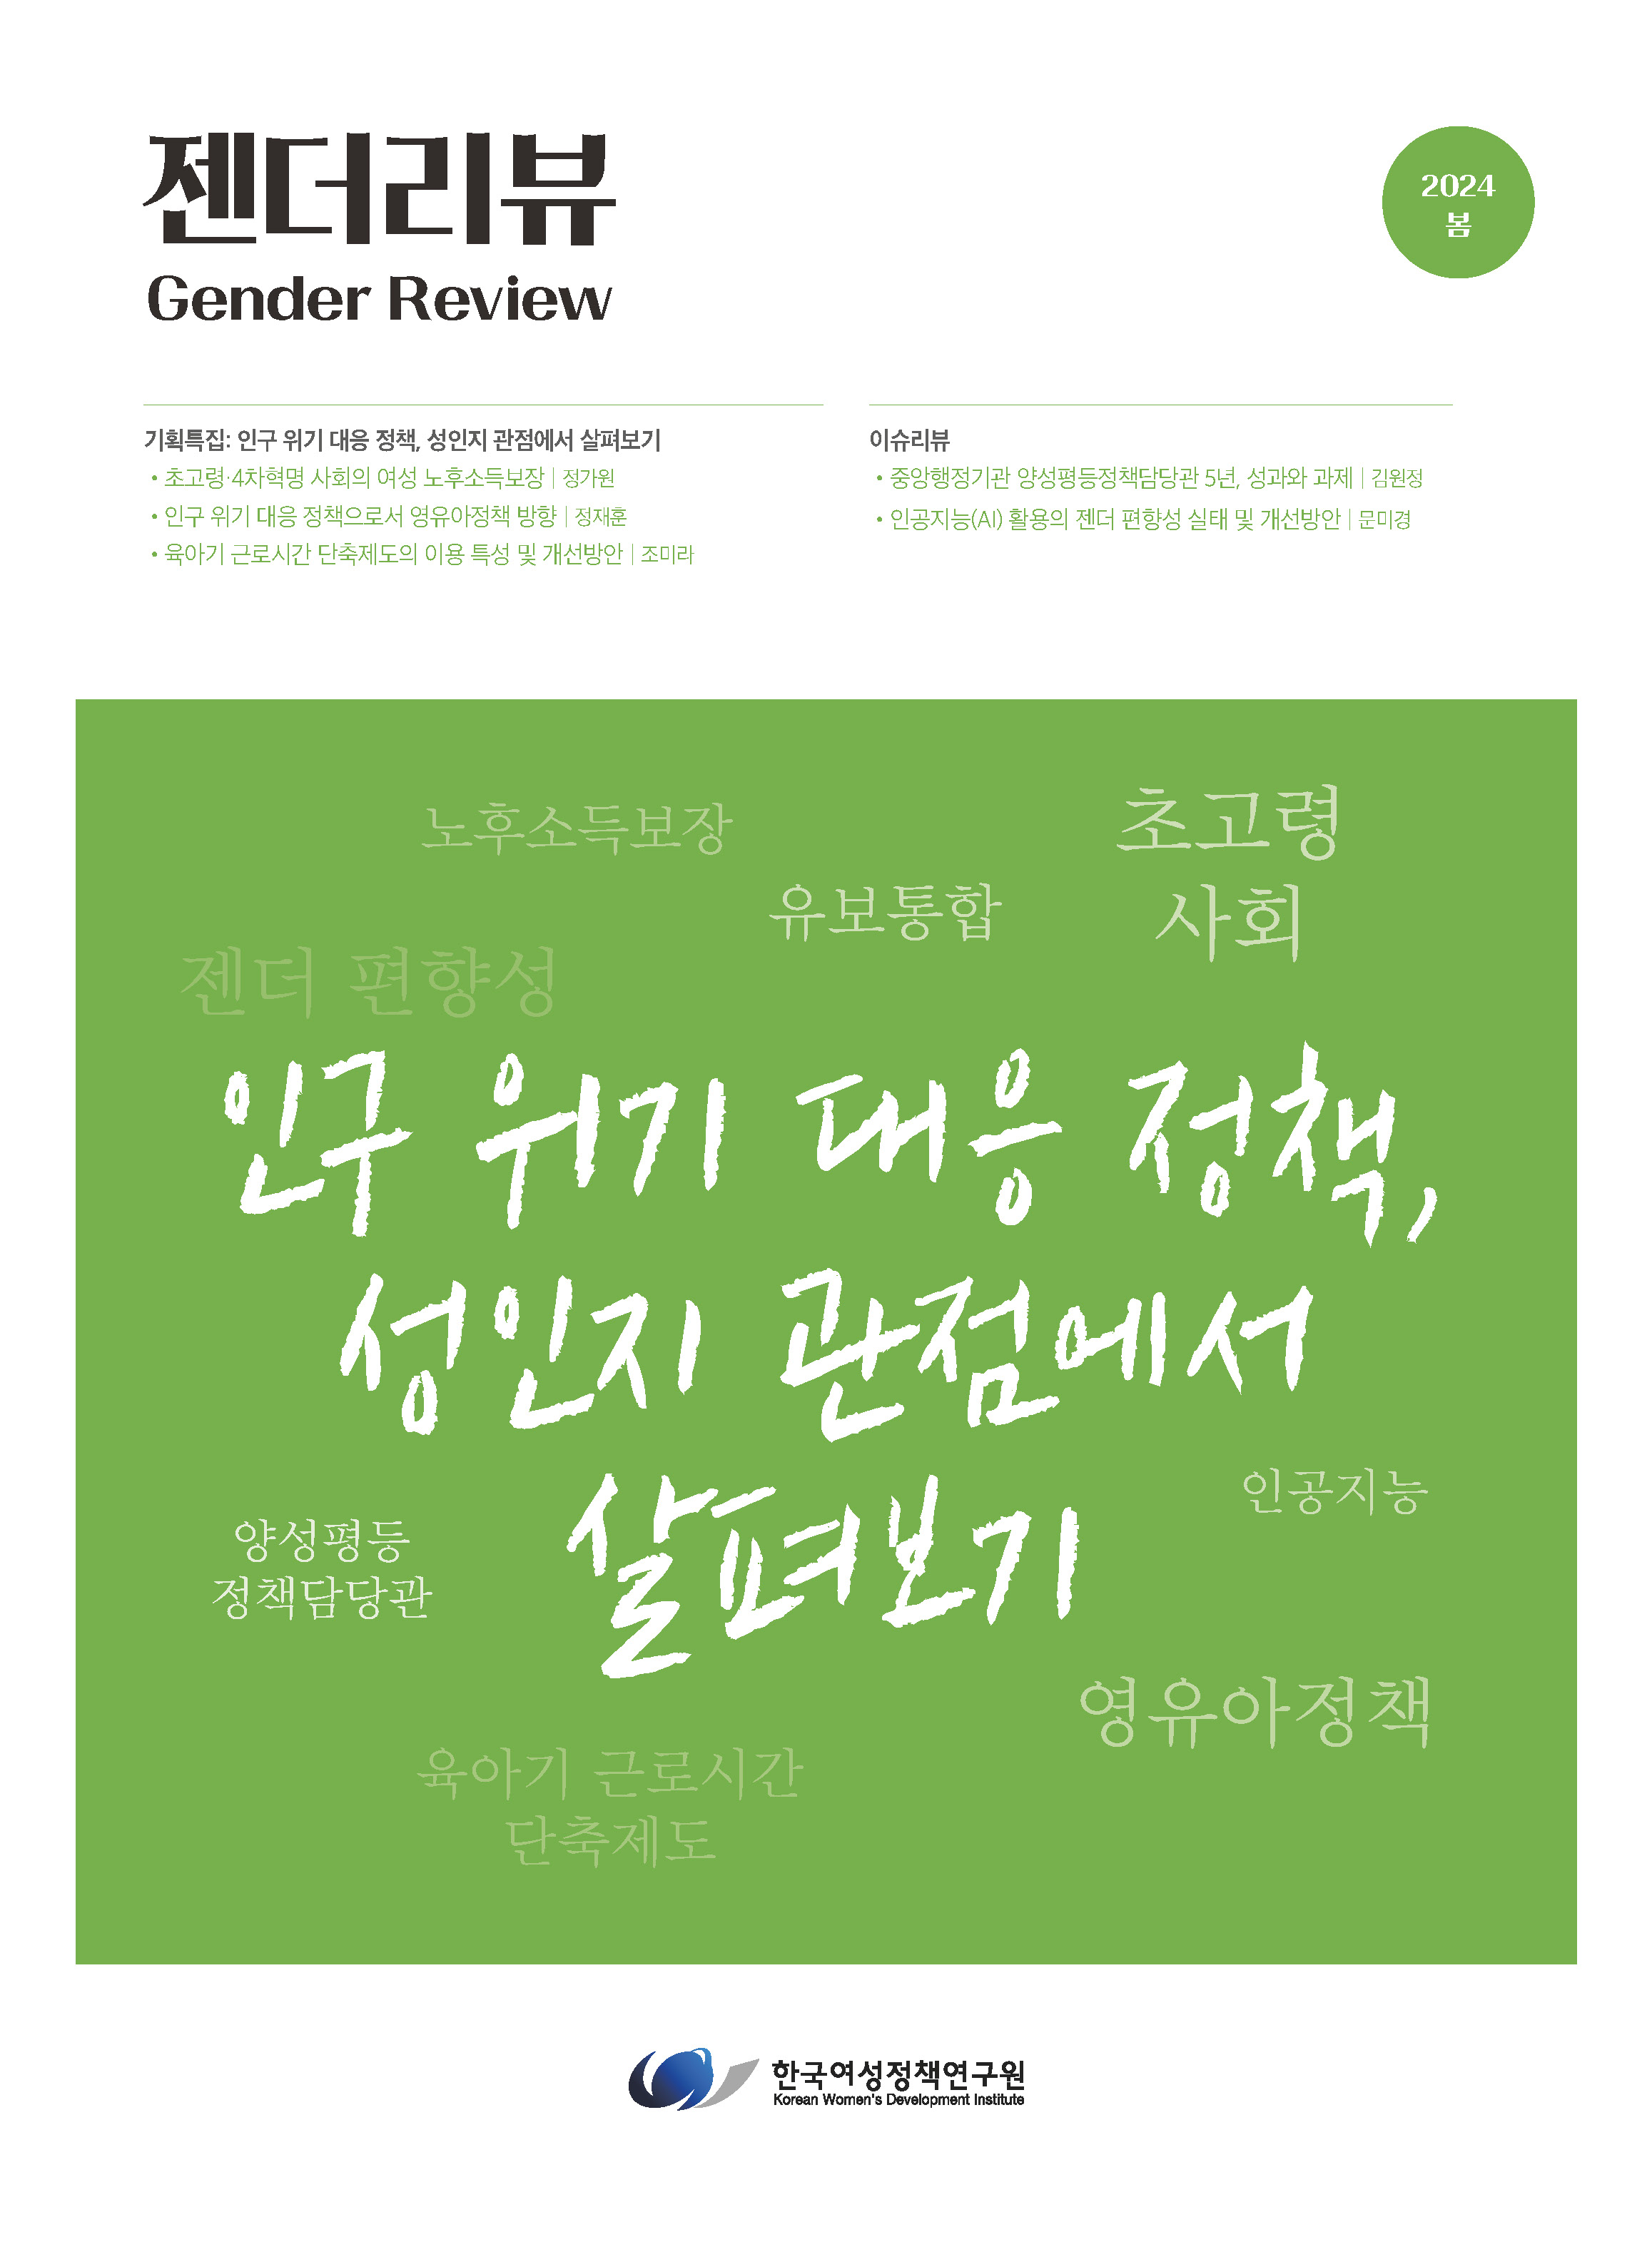 기획특집 1: 초고령·4차혁명 사회의 여성 노후소득보장